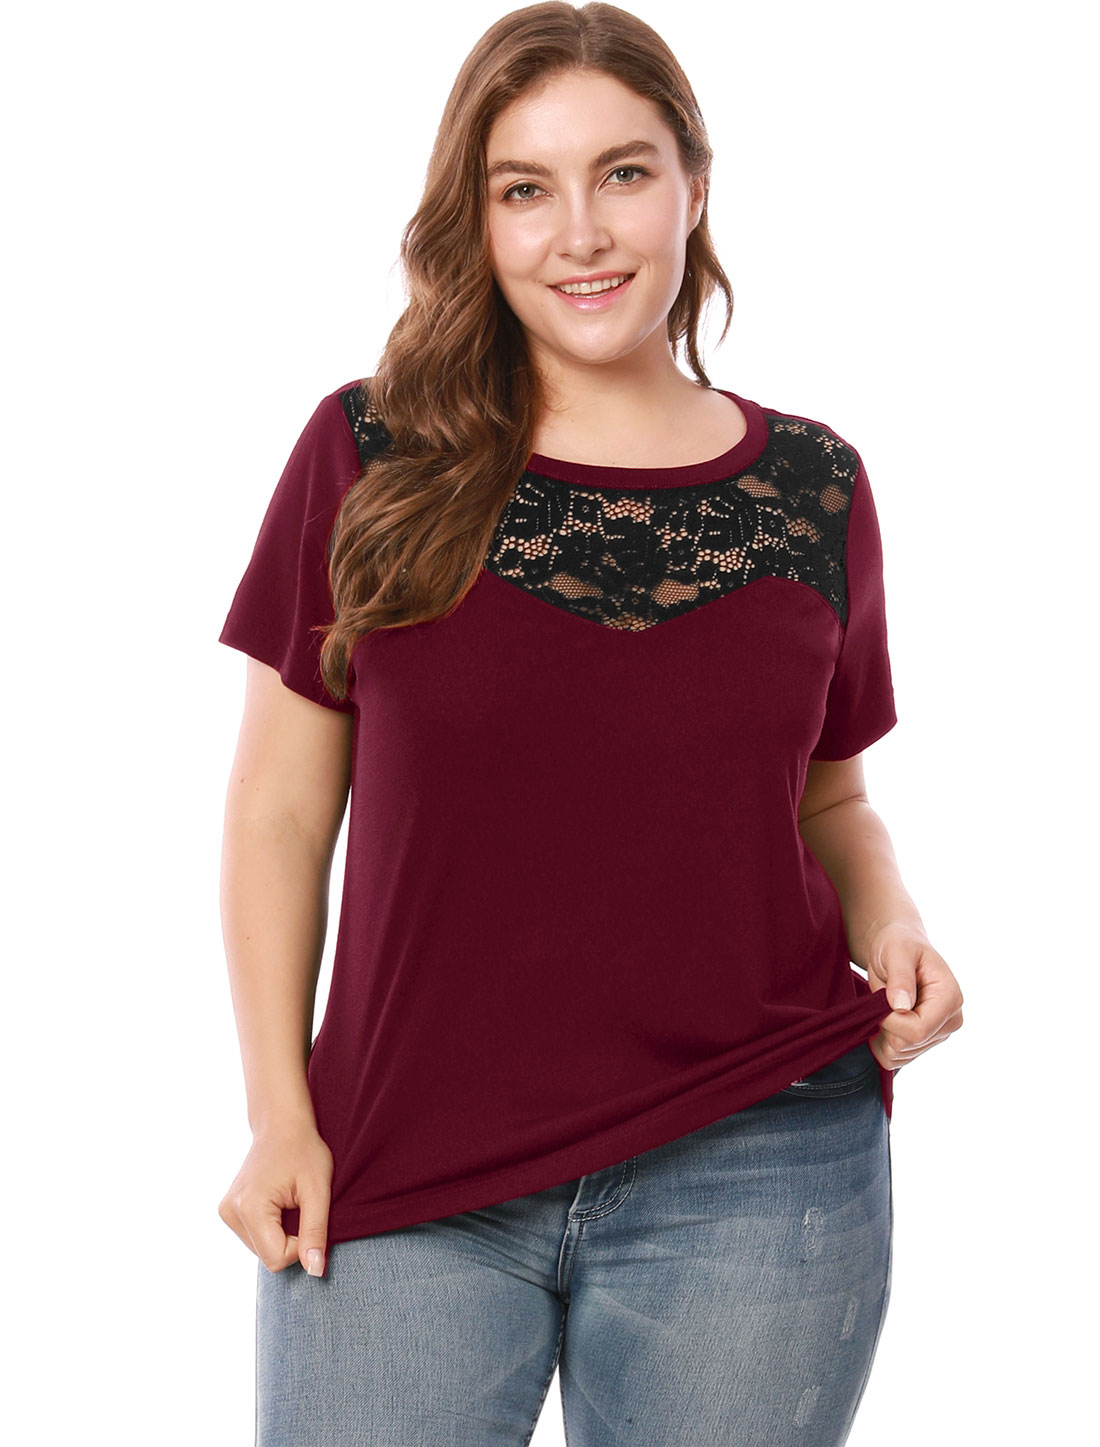 Unique Bargains Women's Plus Size Lace Insert Short Sleeves Round Neck Top